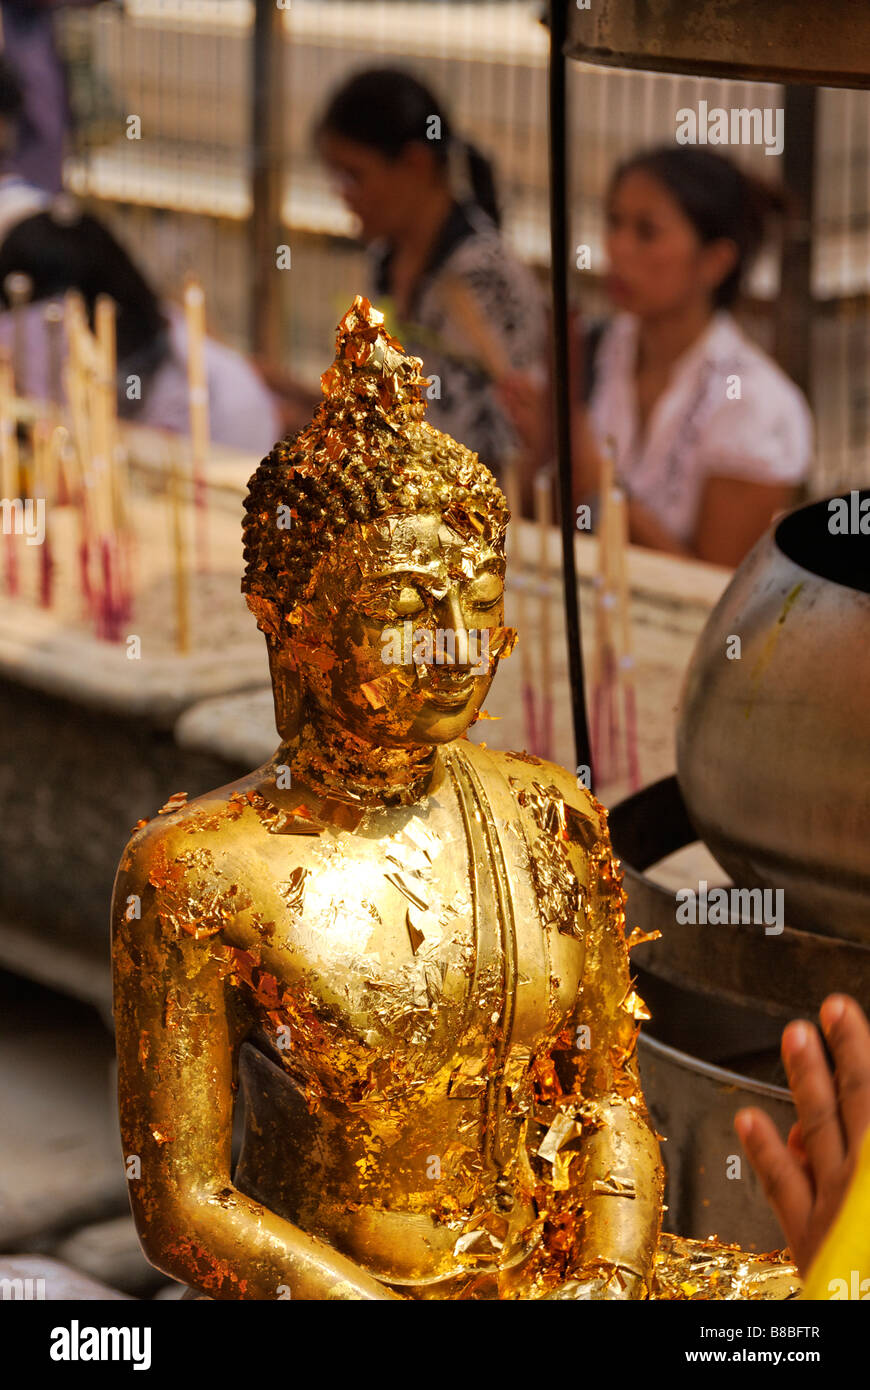 Visage de statue de Bouddha avec des morceaux de feuille d'or - offres de Wat Phra Kaew et le Grand Palais dans le centre de Bangkok en Thaïlande Banque D'Images